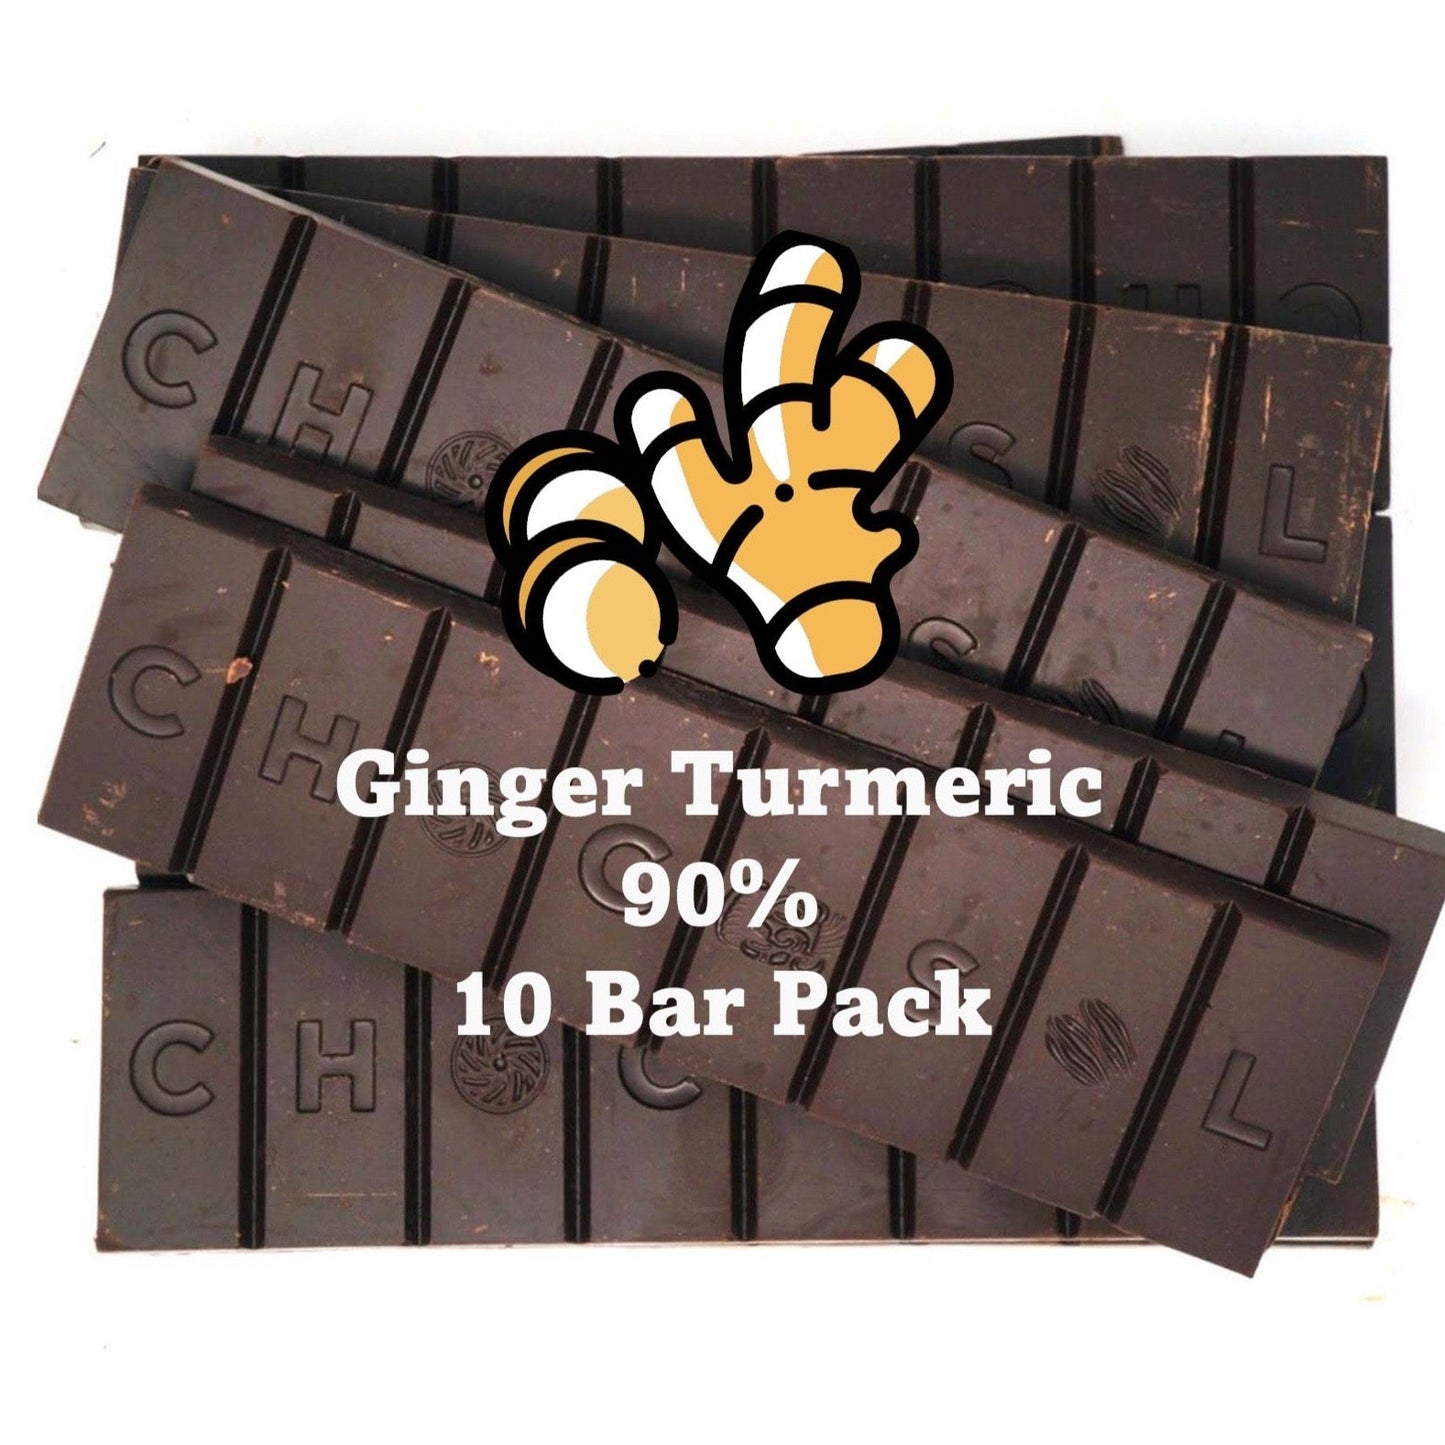 Ginger & Turmeric | 90% - Stock Up Bulk Deal